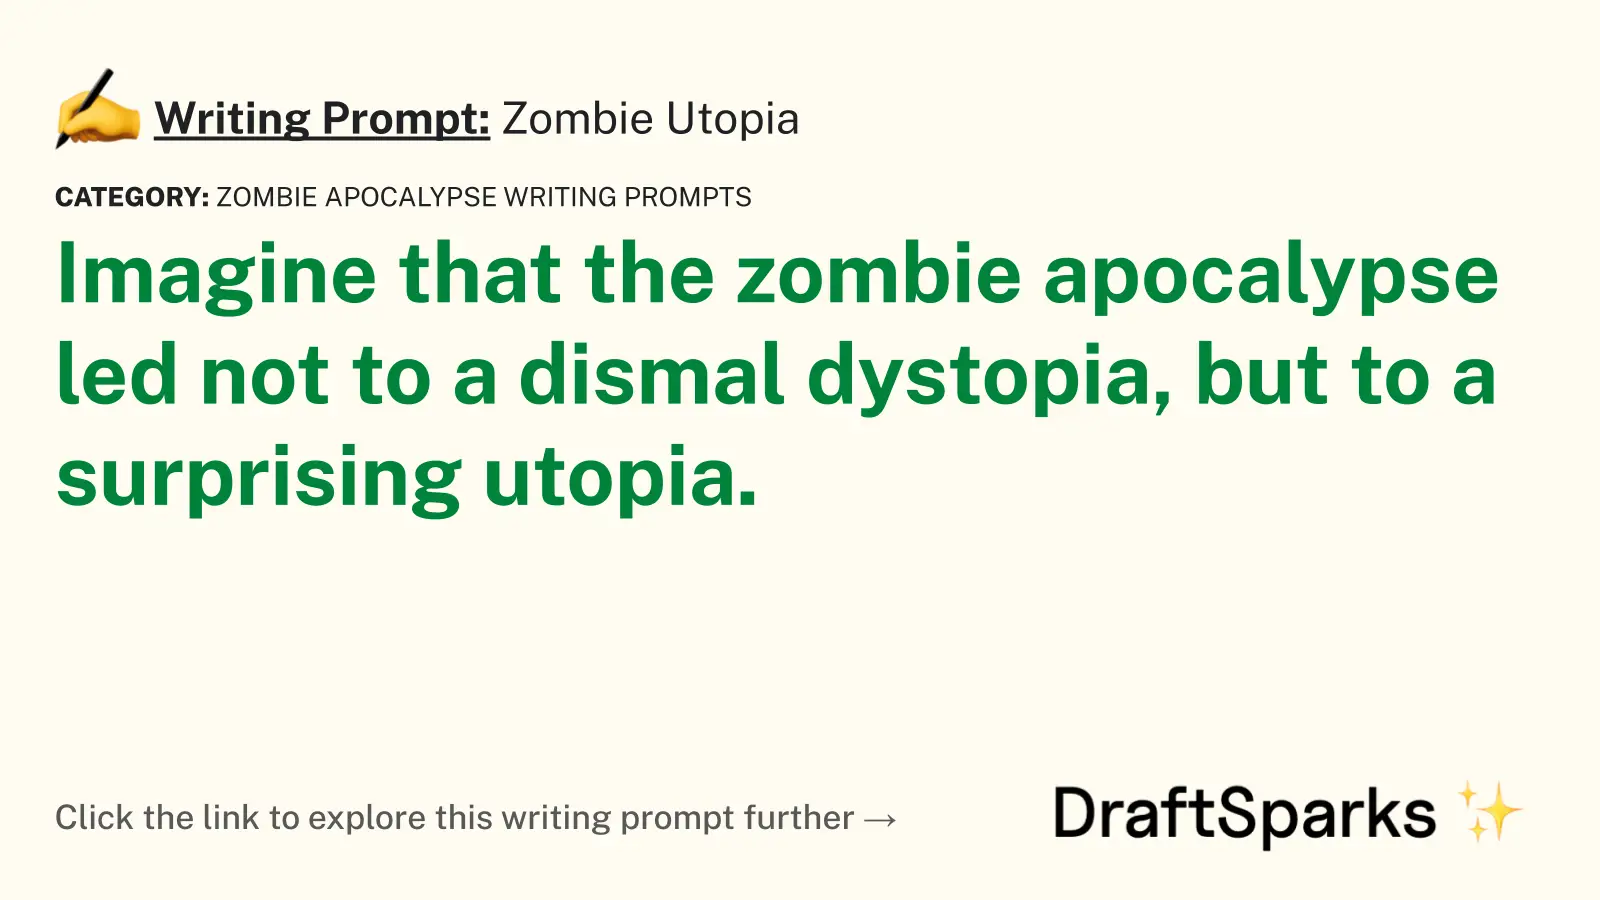 Zombie Utopia